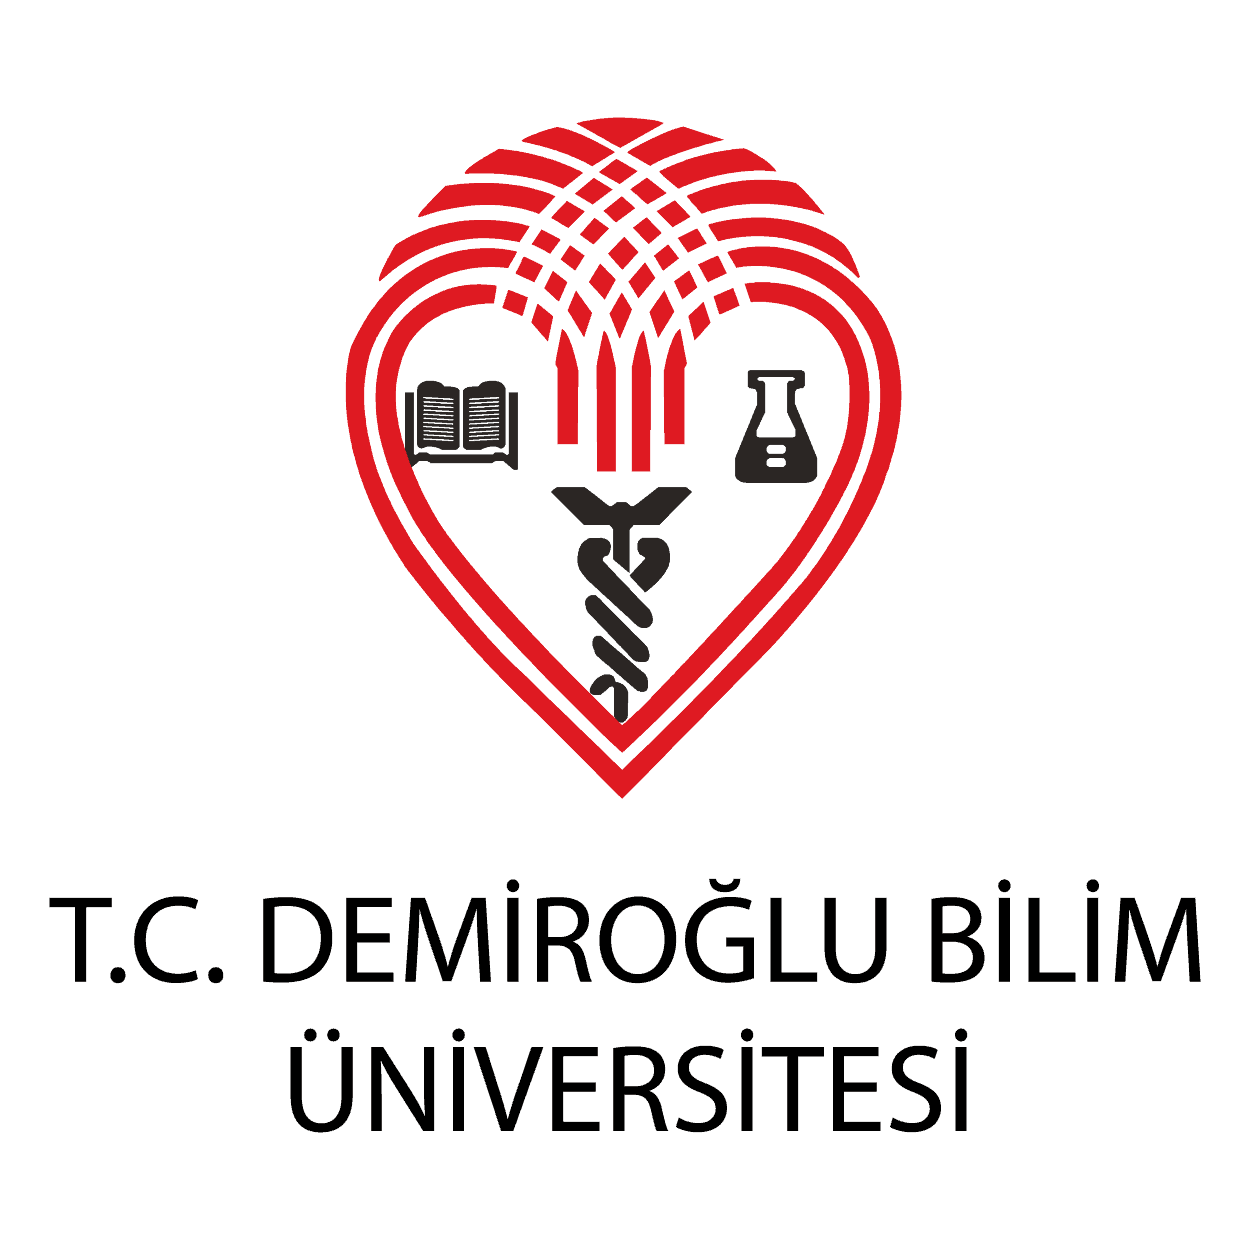 Demiroğlu Bilim Üniversitesi (İstanbul) png